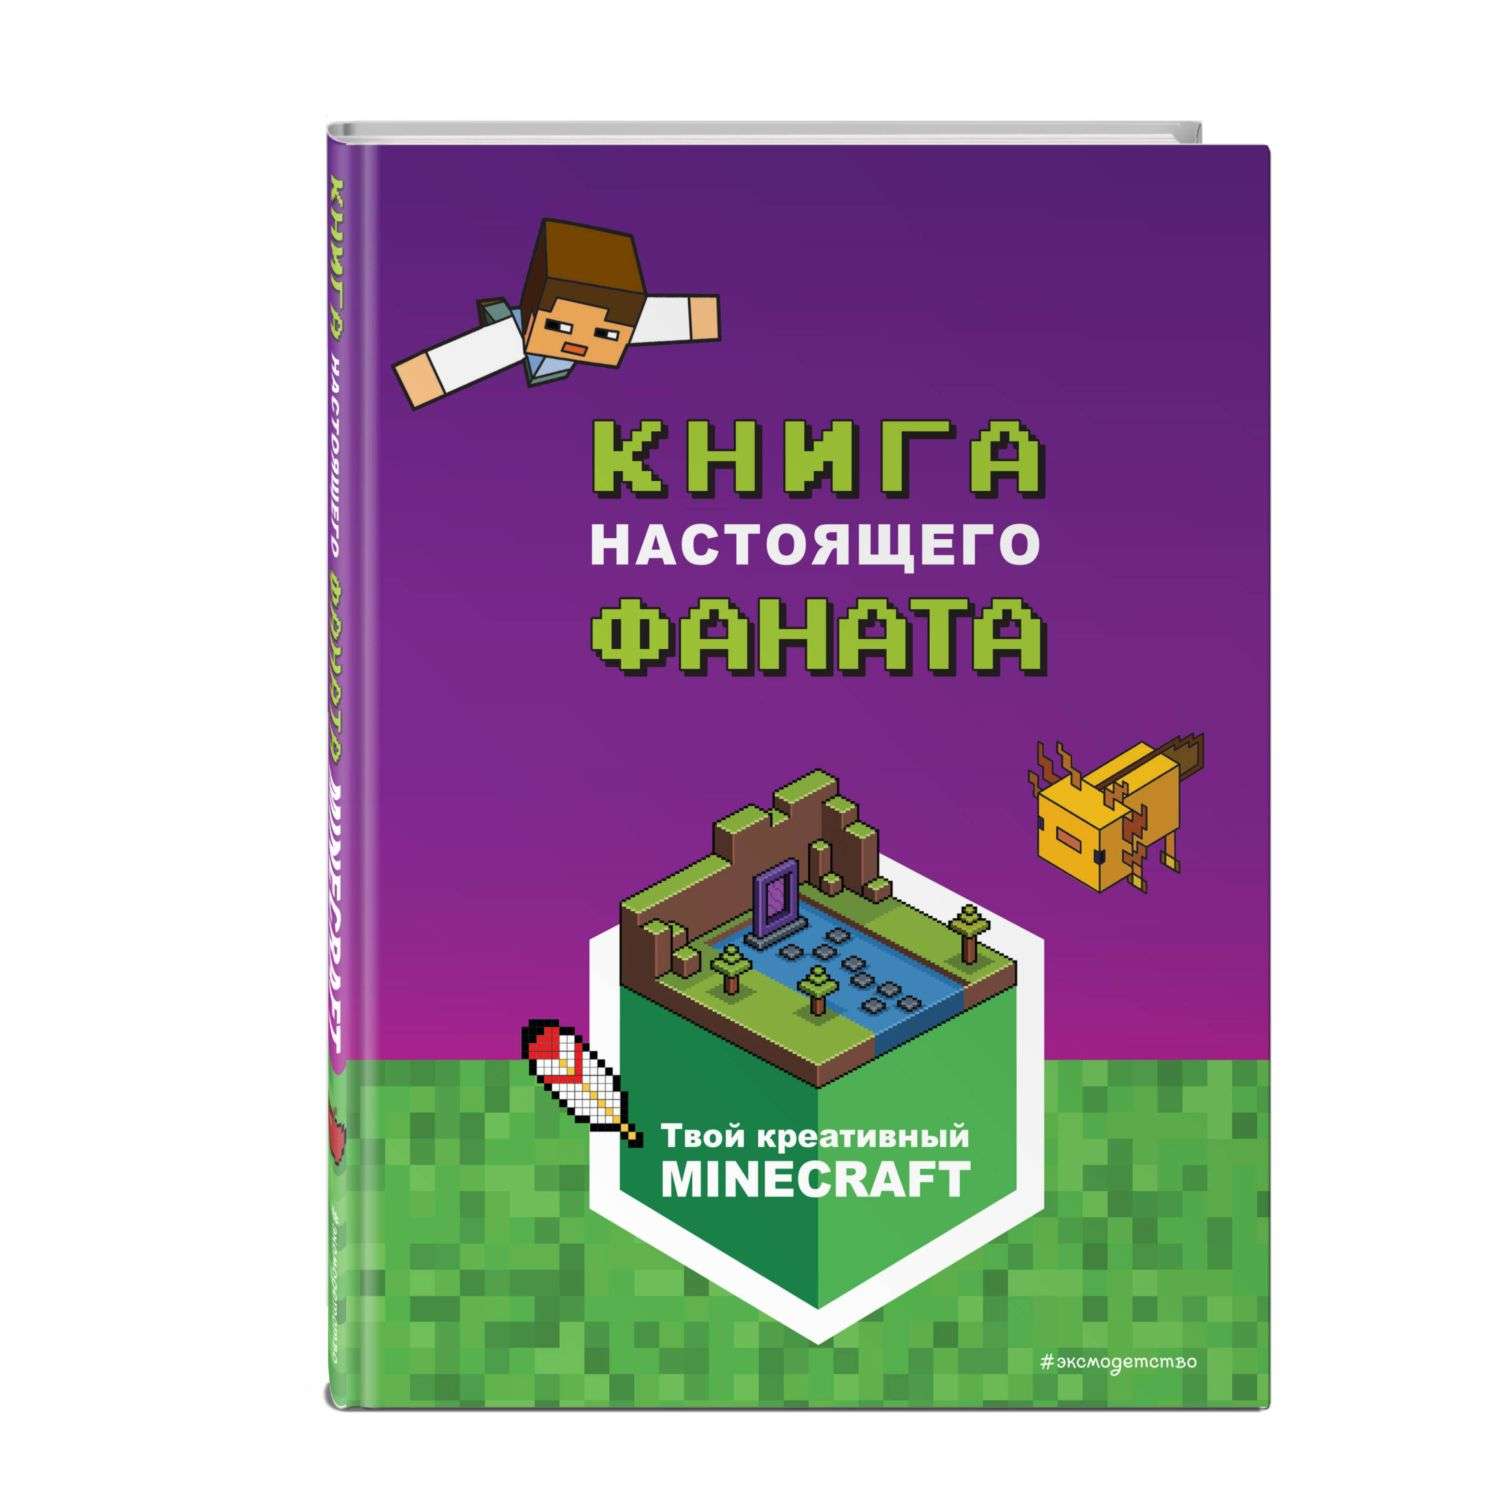 Книга Minecraft Книга настоящего фаната - фото 1